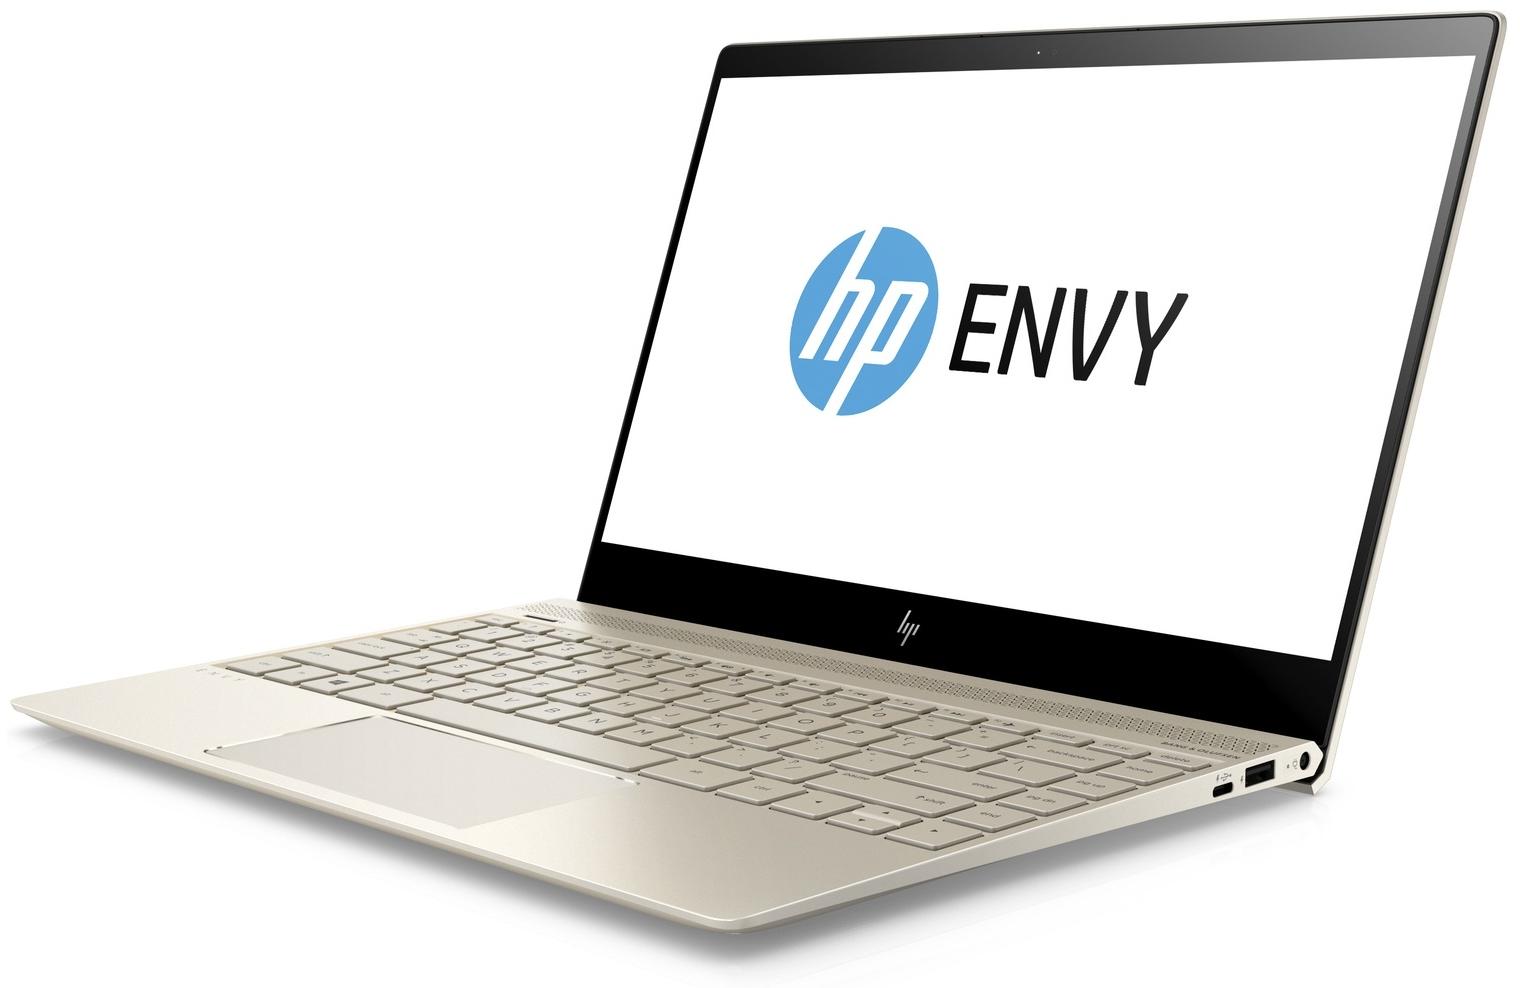   HP Envy 13-ad007ur (1WS53EA)  1